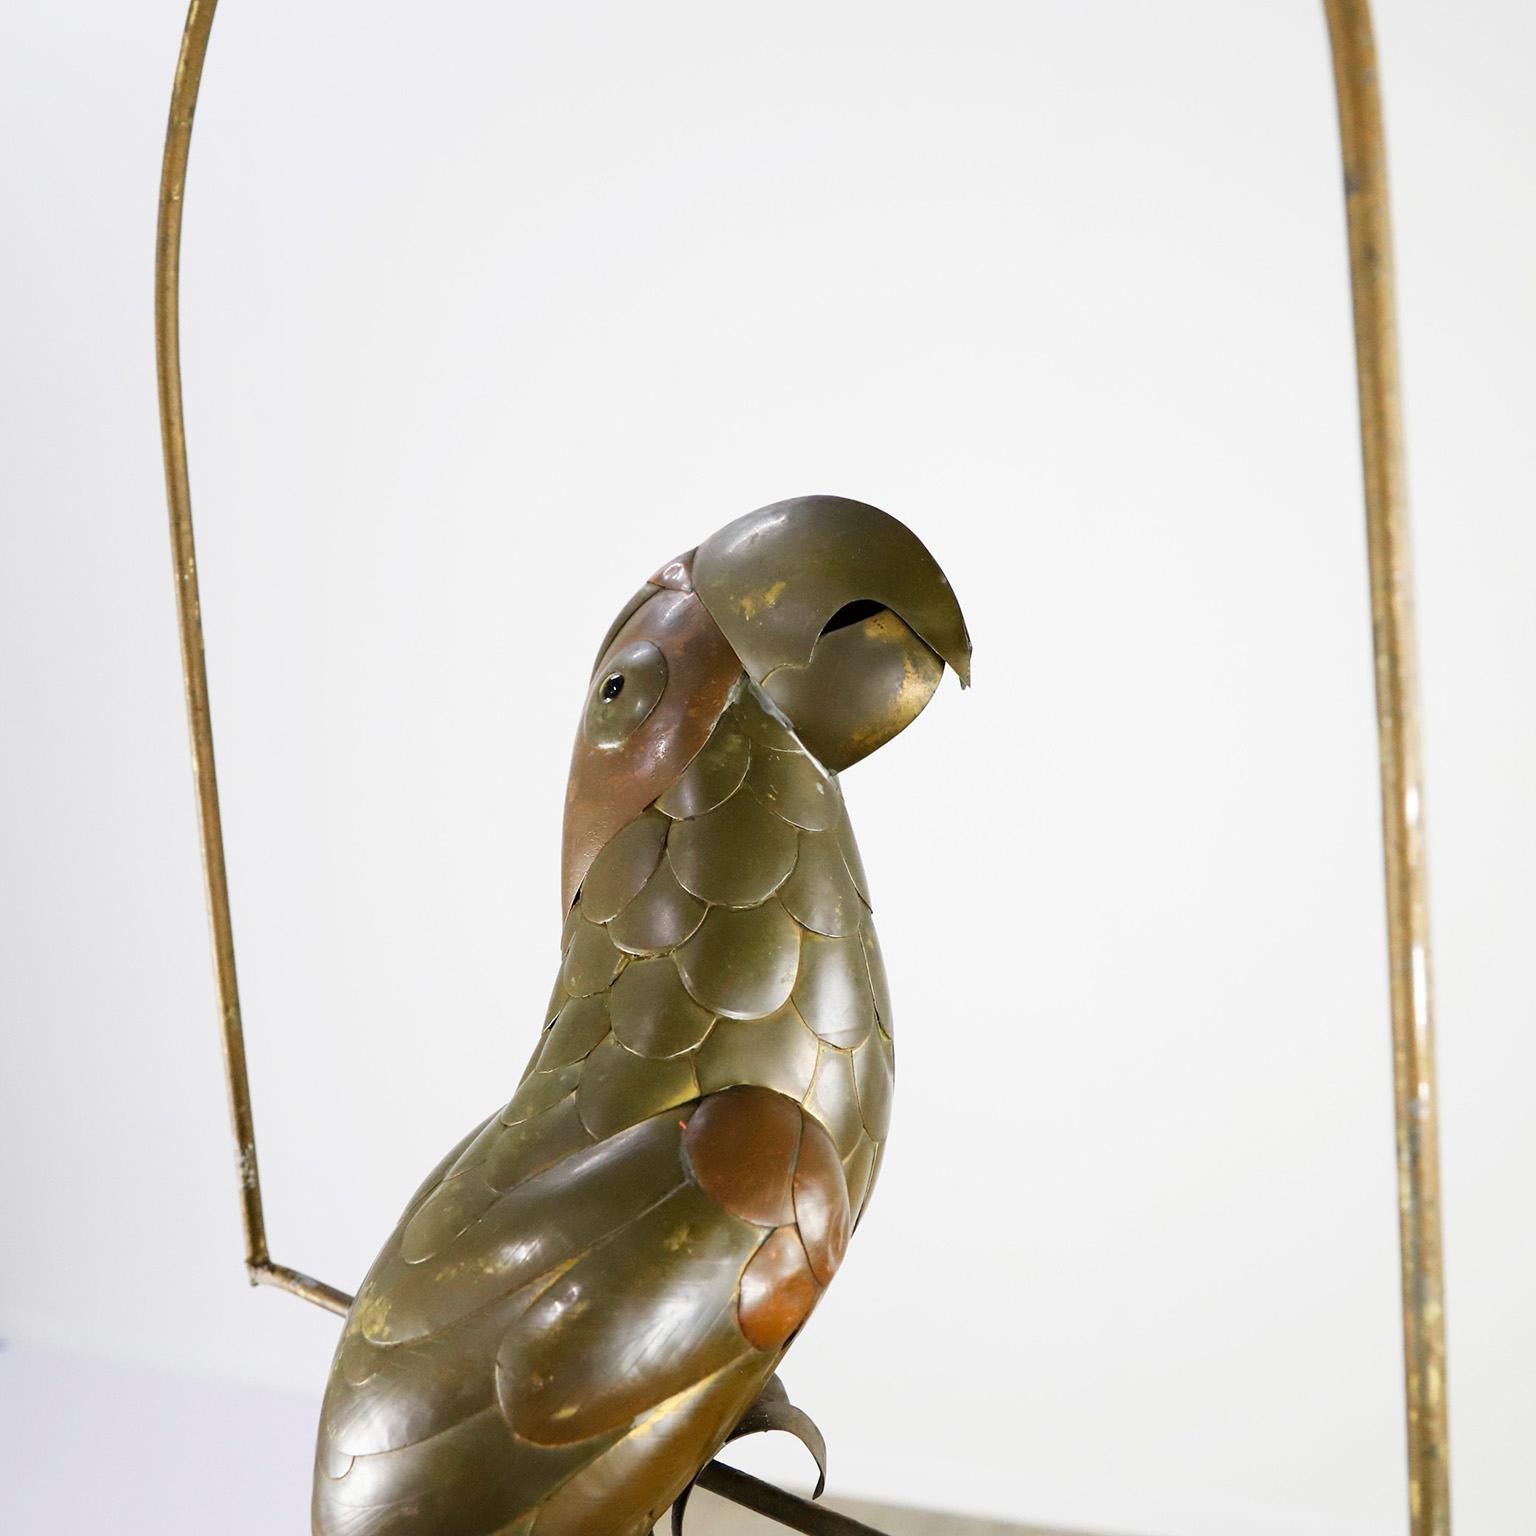 Perroquet en cuivre, laiton et aluminium sur un support suspendu à un cerceau par Sergio Bustamante, vers 1960. Présente quelques dommages à la tête et à la queue.

Sergio Bustamante est un artiste et sculpteur mexicain. Il a commencé par des